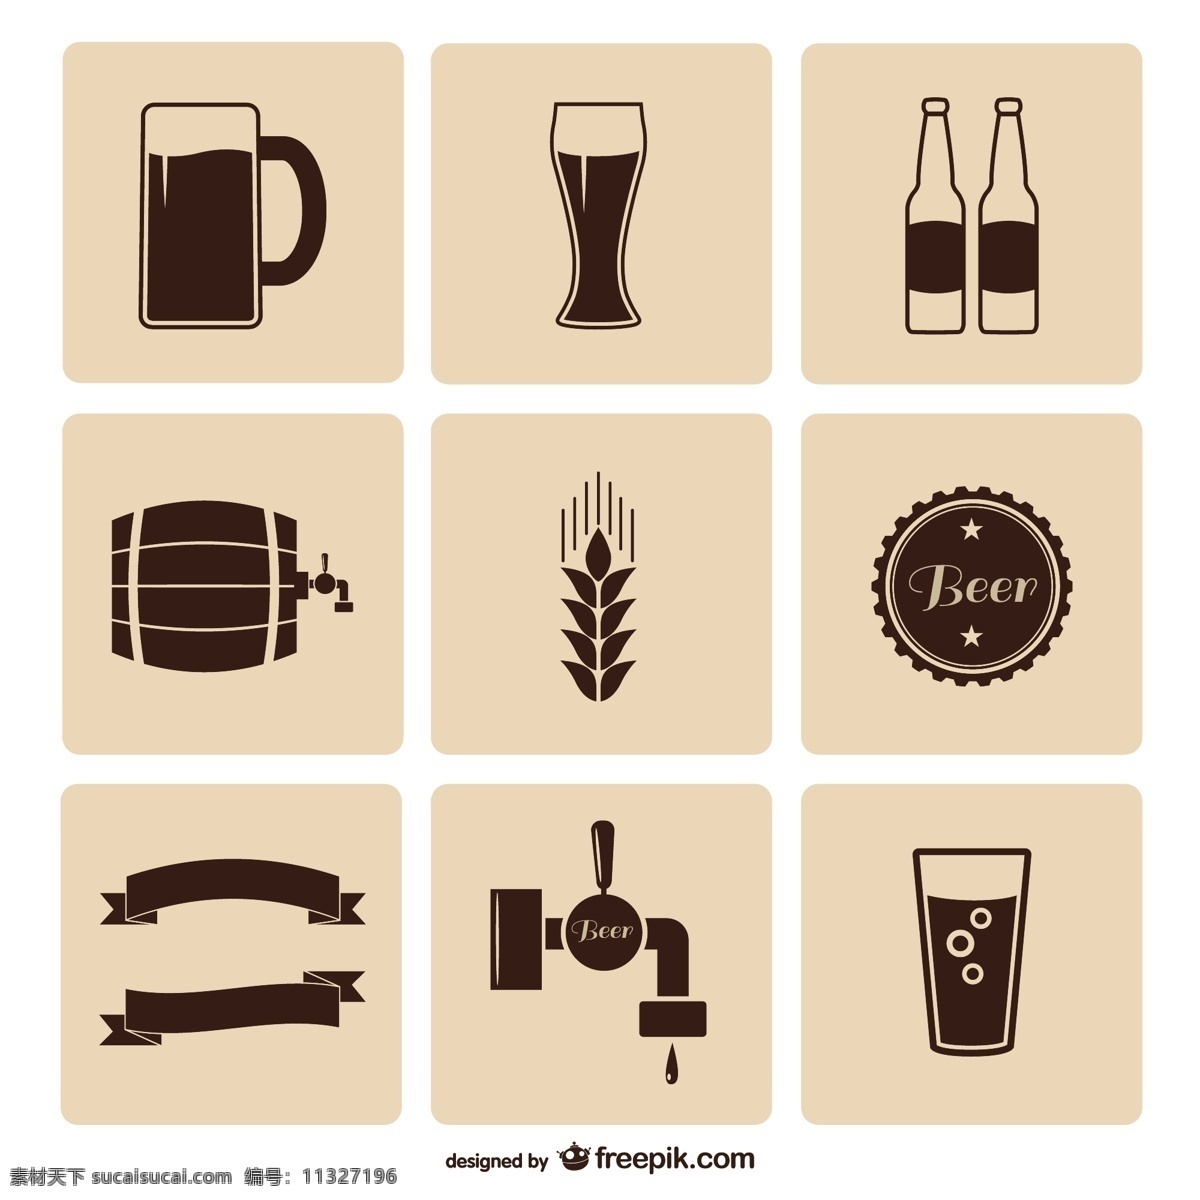 啤酒图标包 图标 啤酒 瓶子 玻璃 杯子 图标集 包装 啤酒杯 集合 图标包 啤酒瓶 白色